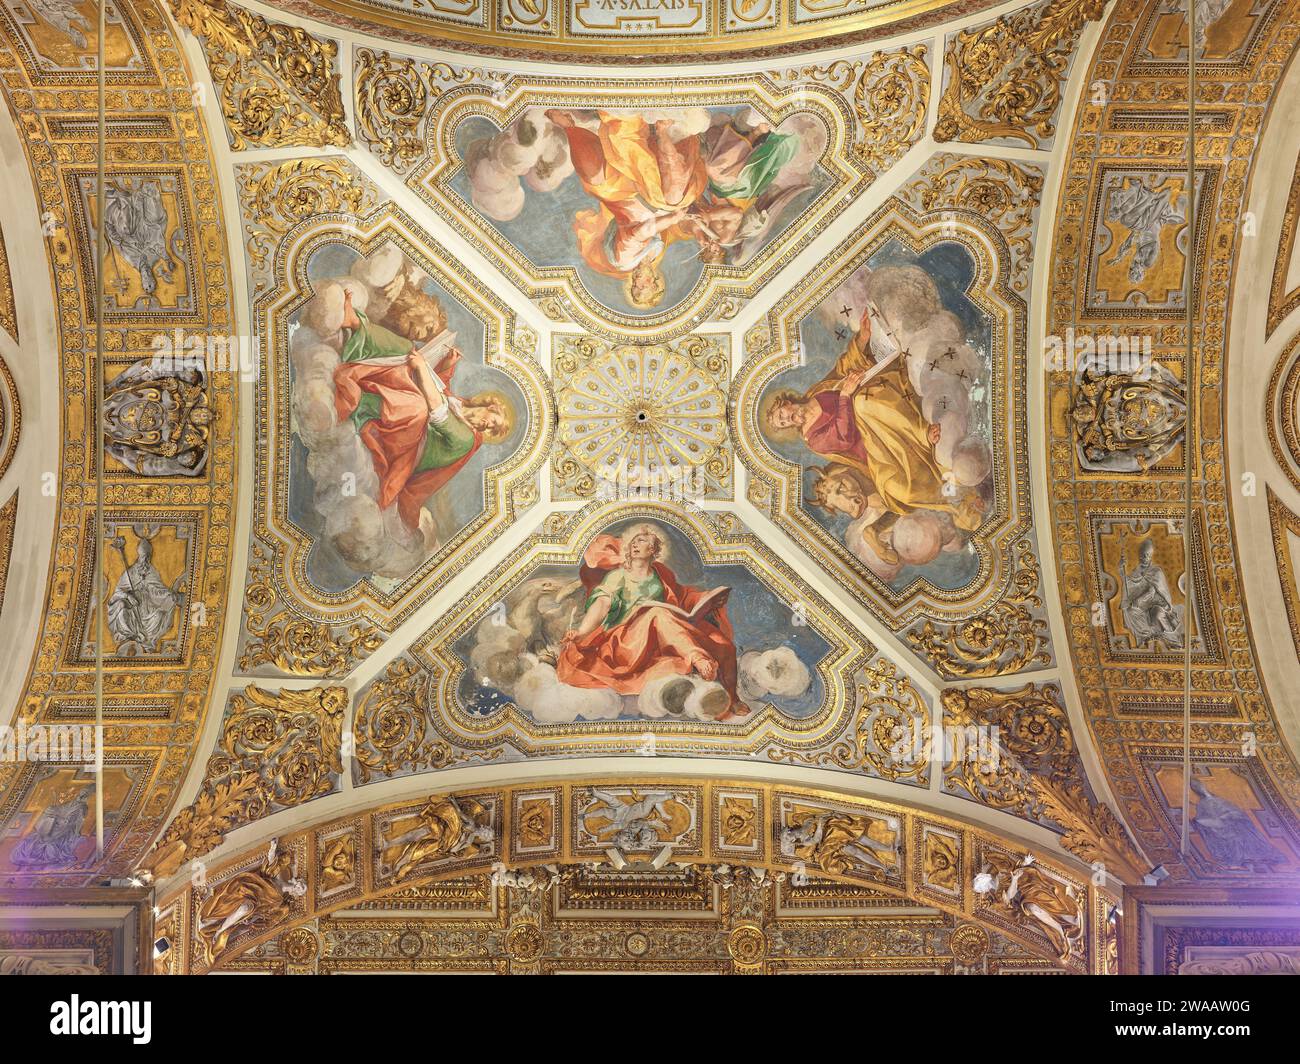 Plafond de la basilique papale de Santa Maria Maggiore (Sainte Marie majeure) dédié à la vierge Marie mère de Jésus, Rome, Italie. Banque D'Images